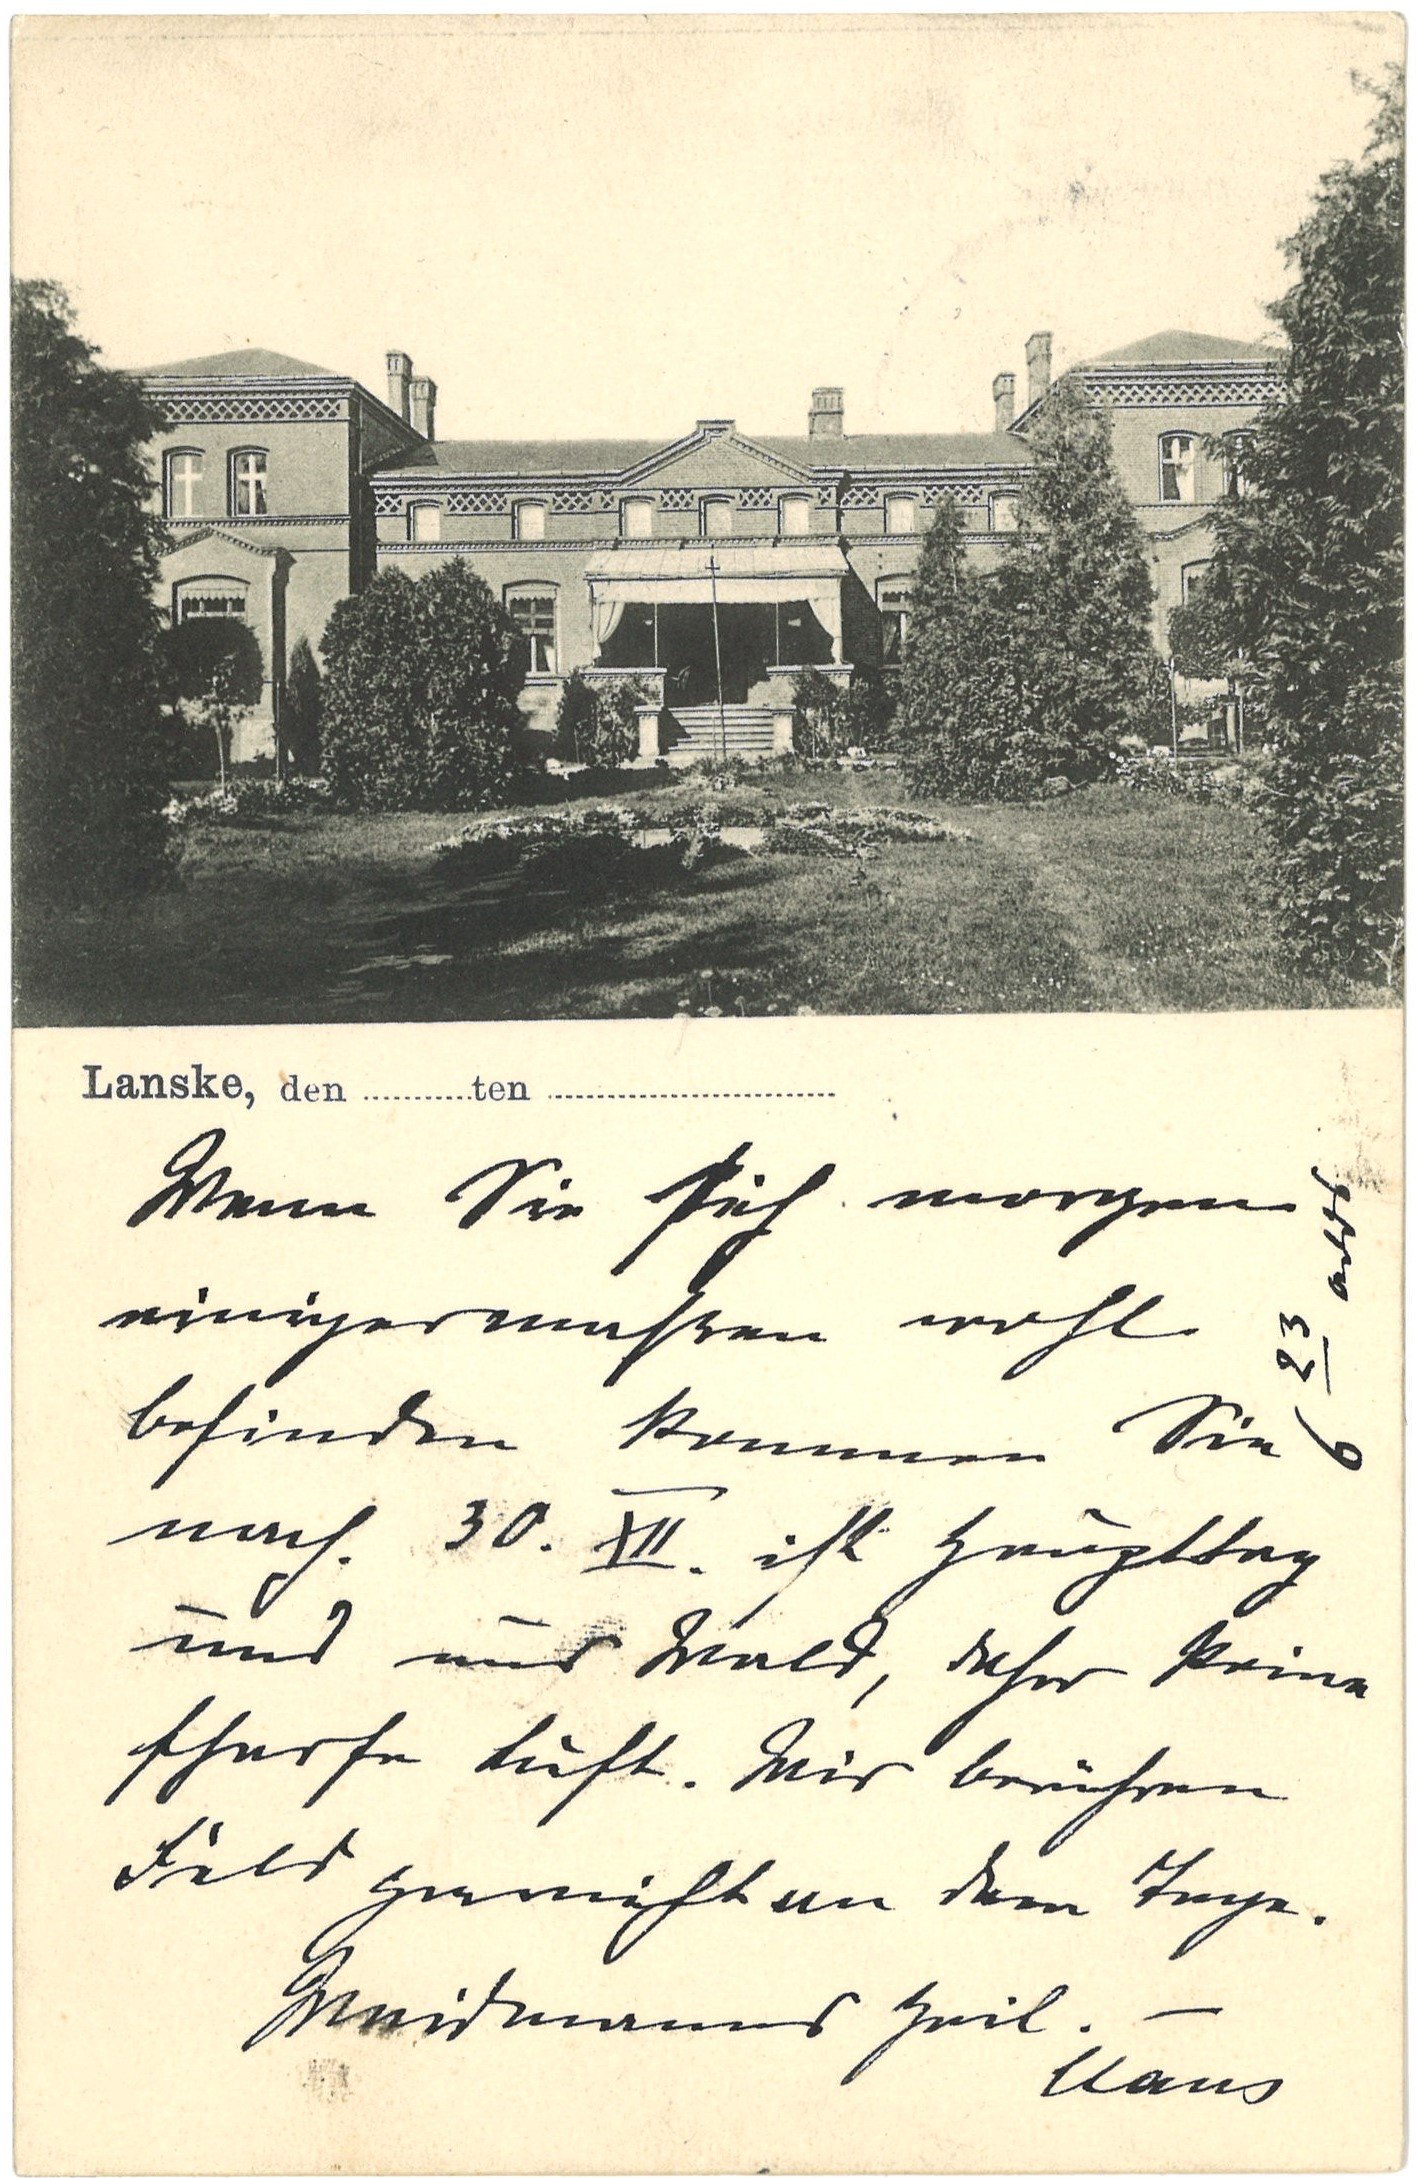 Lauske (Kr. Schwerin/Warthe) [Krasne Dłusko]: Herrenhaus (Landesgeschichtliche Vereinigung für die Mark Brandenburg e.V. CC BY)